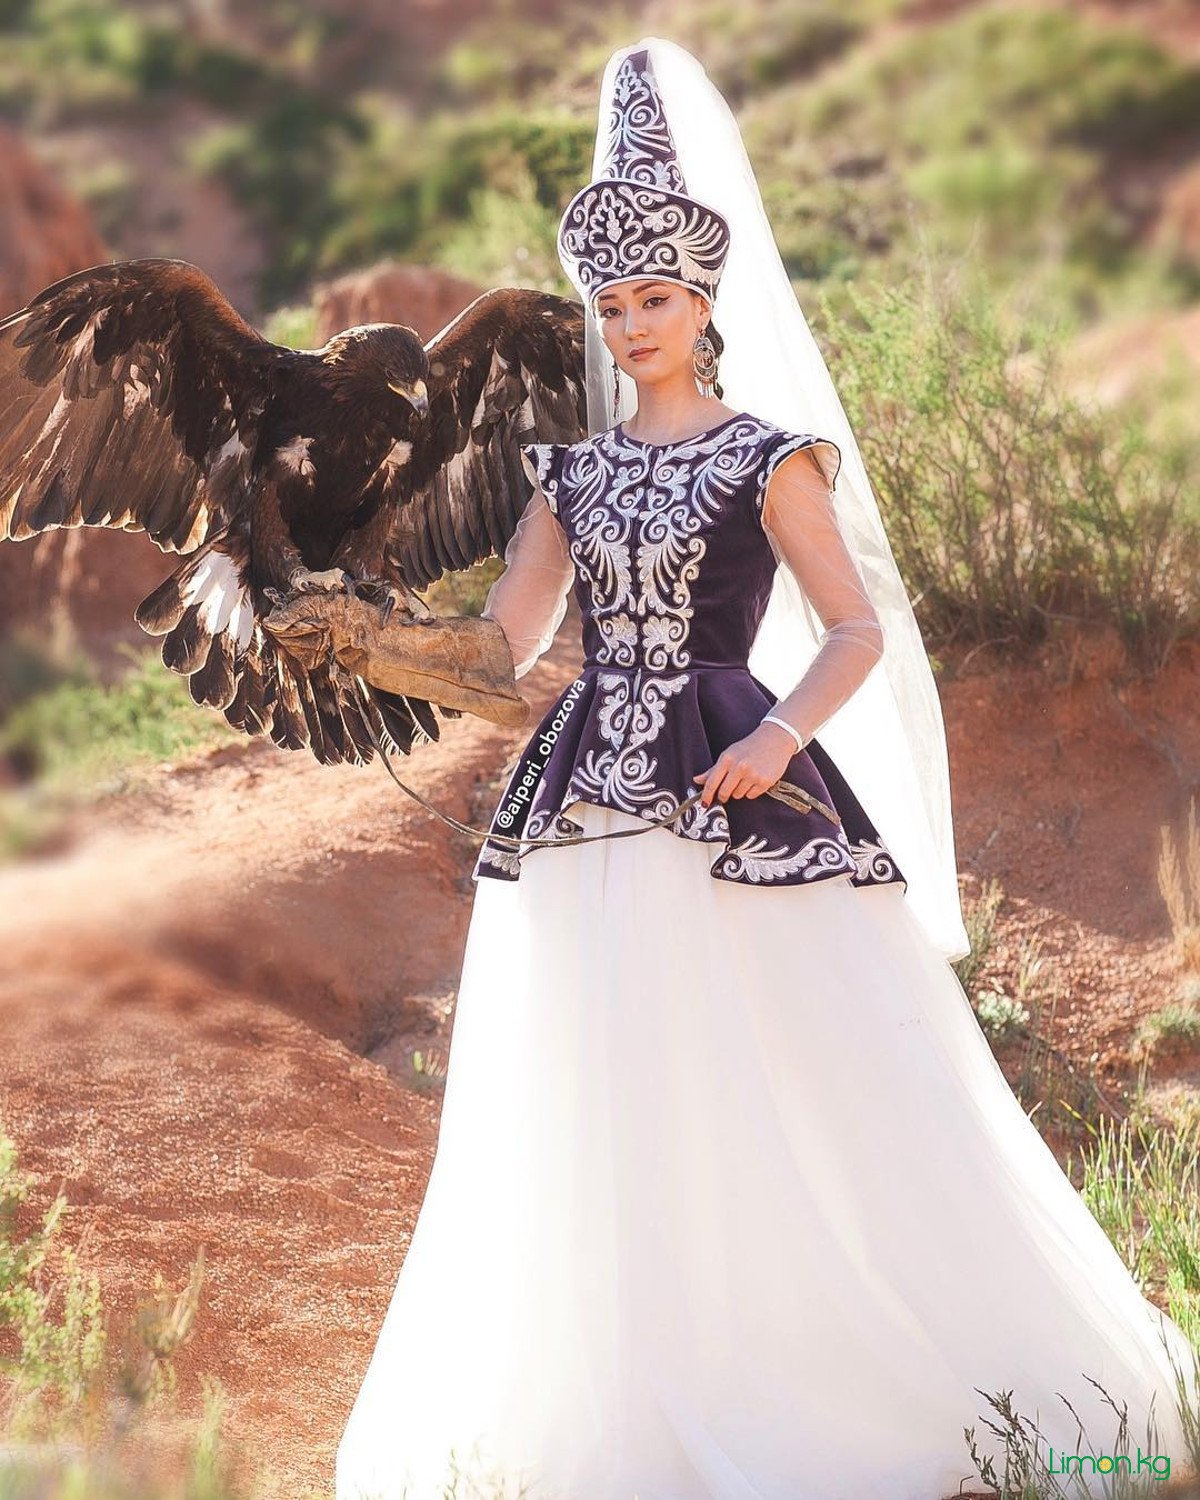 Казахские платья